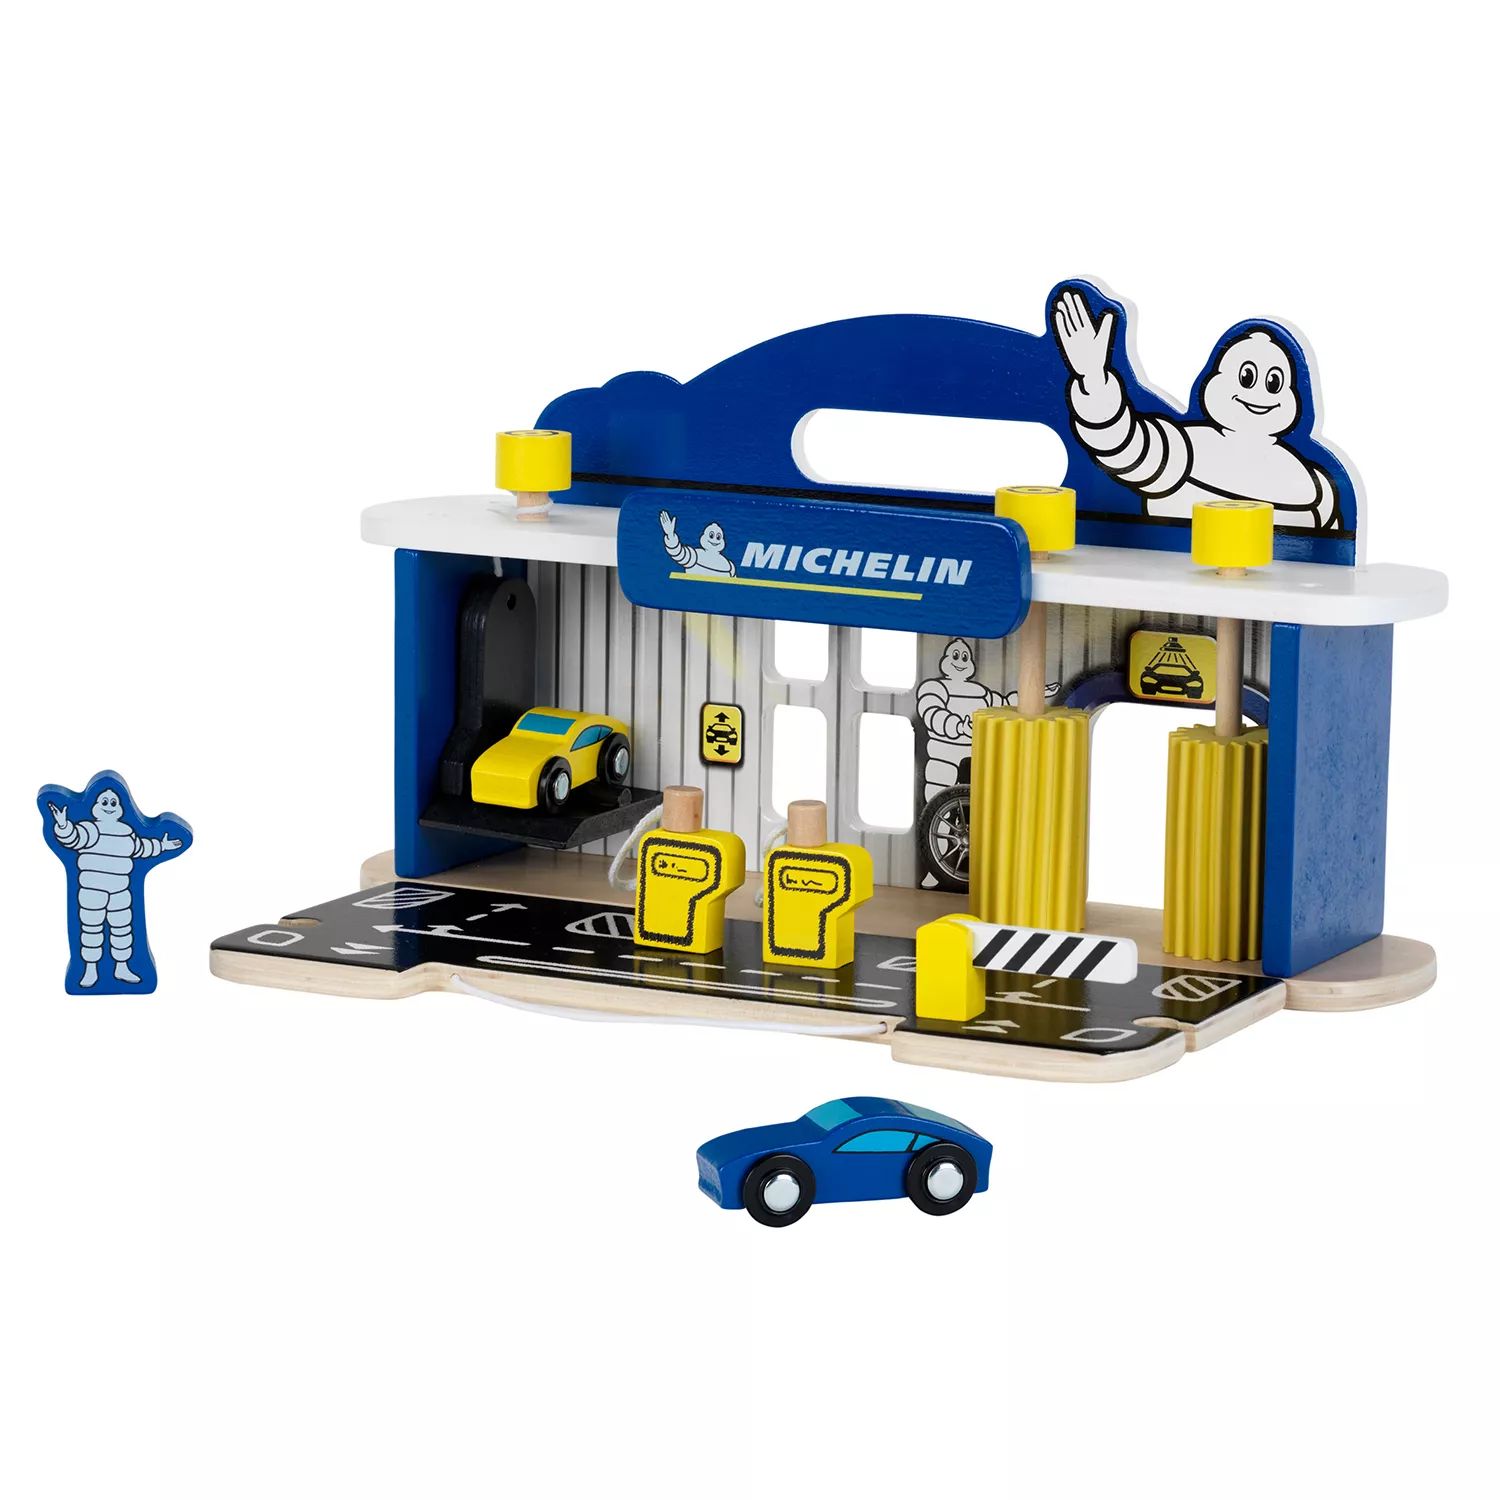 Детская игрушка Theo Klein Michelin Car Service Station с 2 машинками для детей от 3 лет и старше Theo Klein